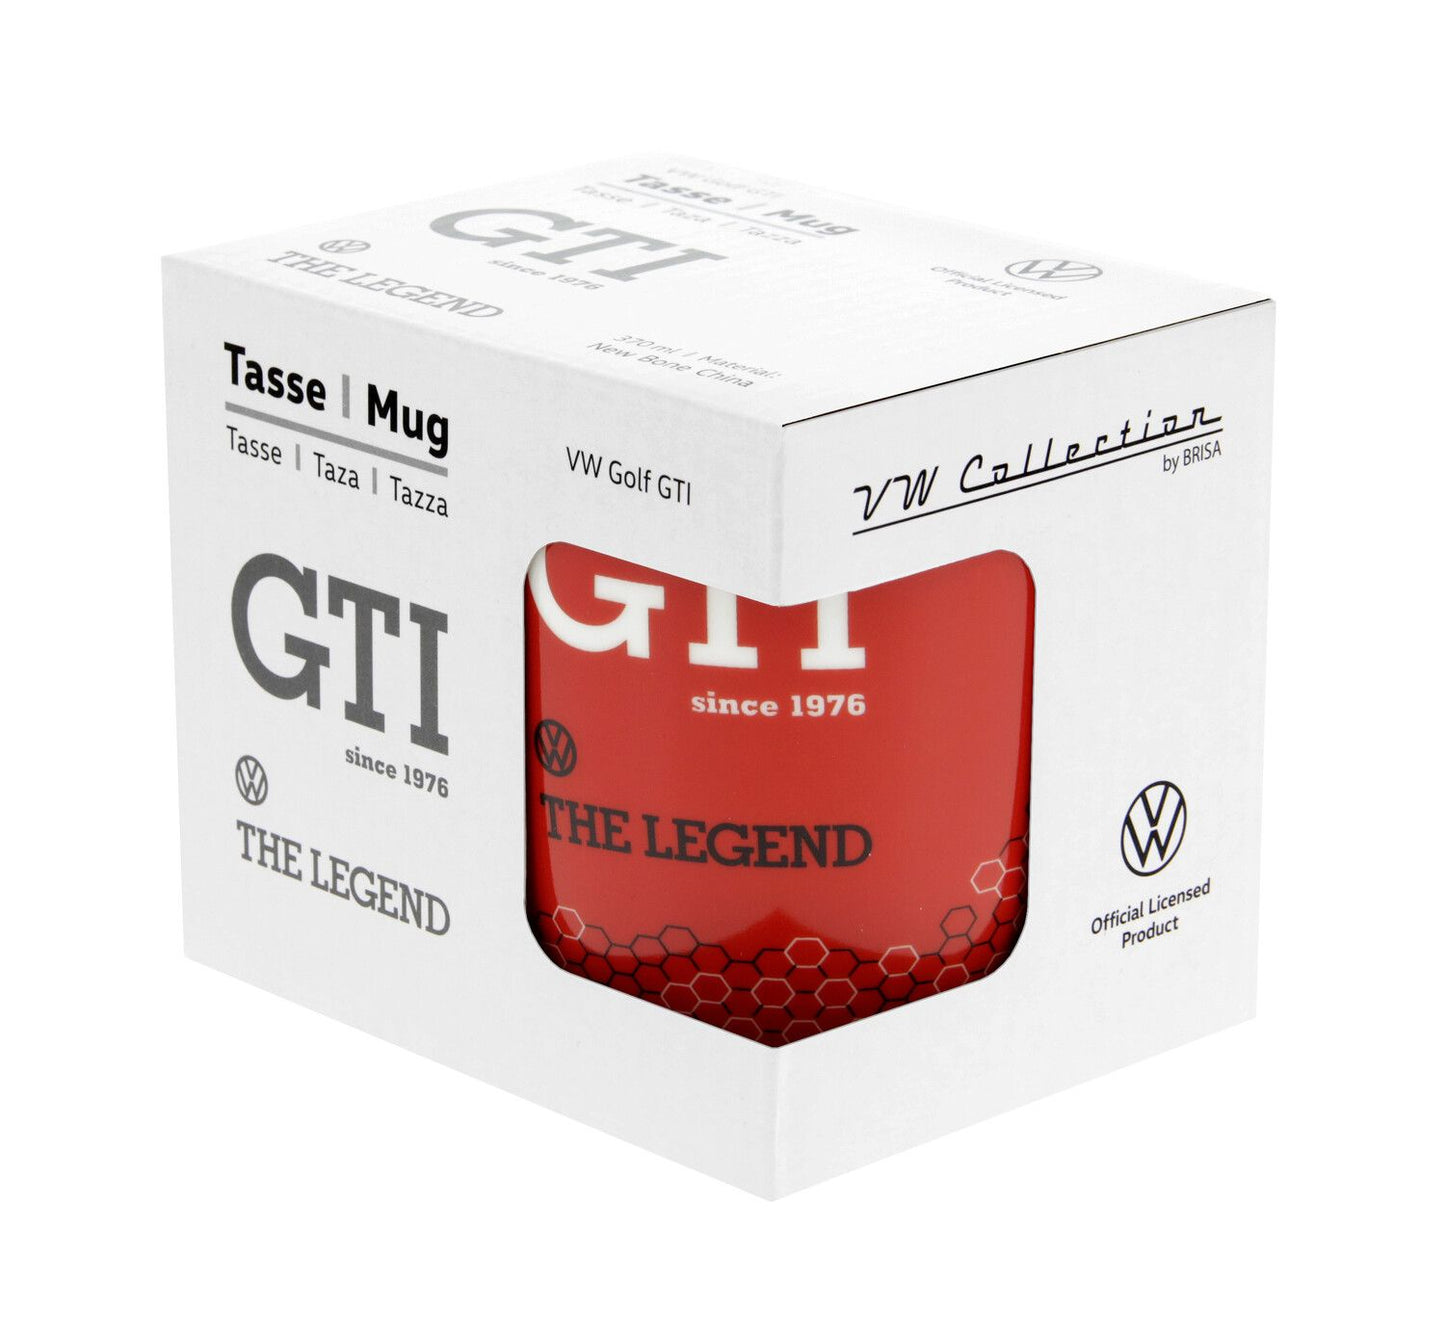 Grande tasse GTI Volkswagen